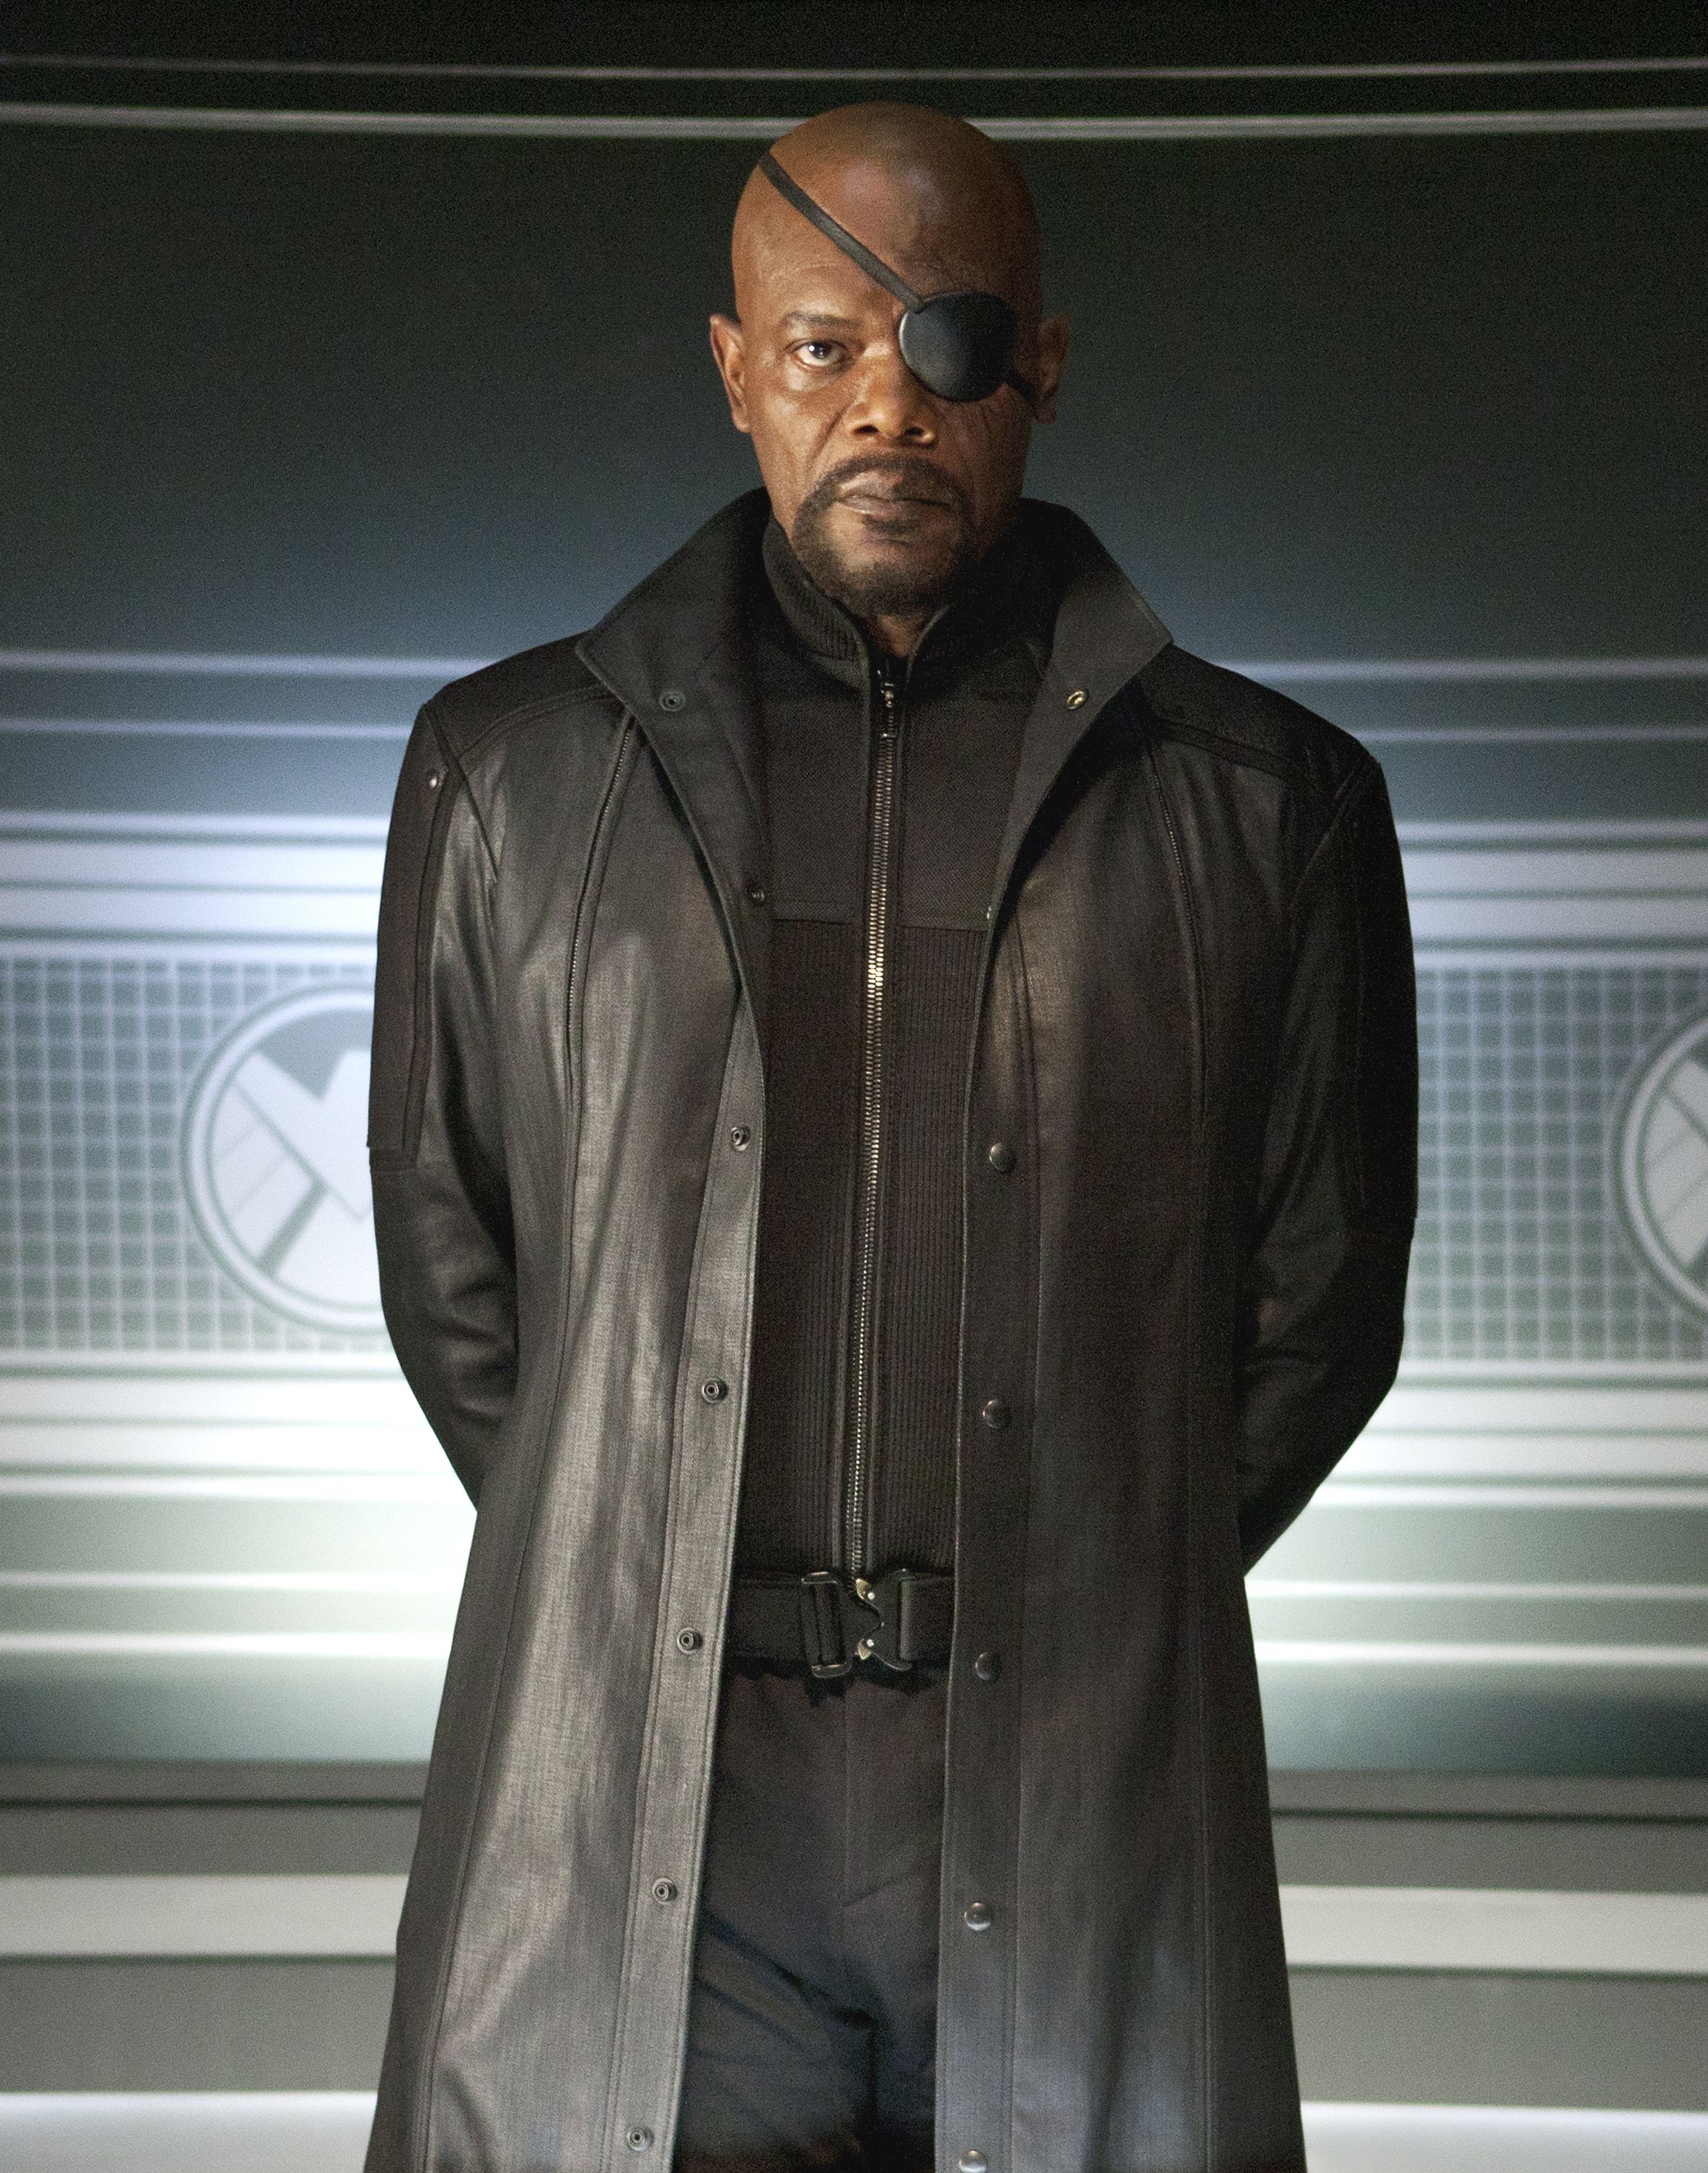 Samuel L. Jackson in black as Nick Fury